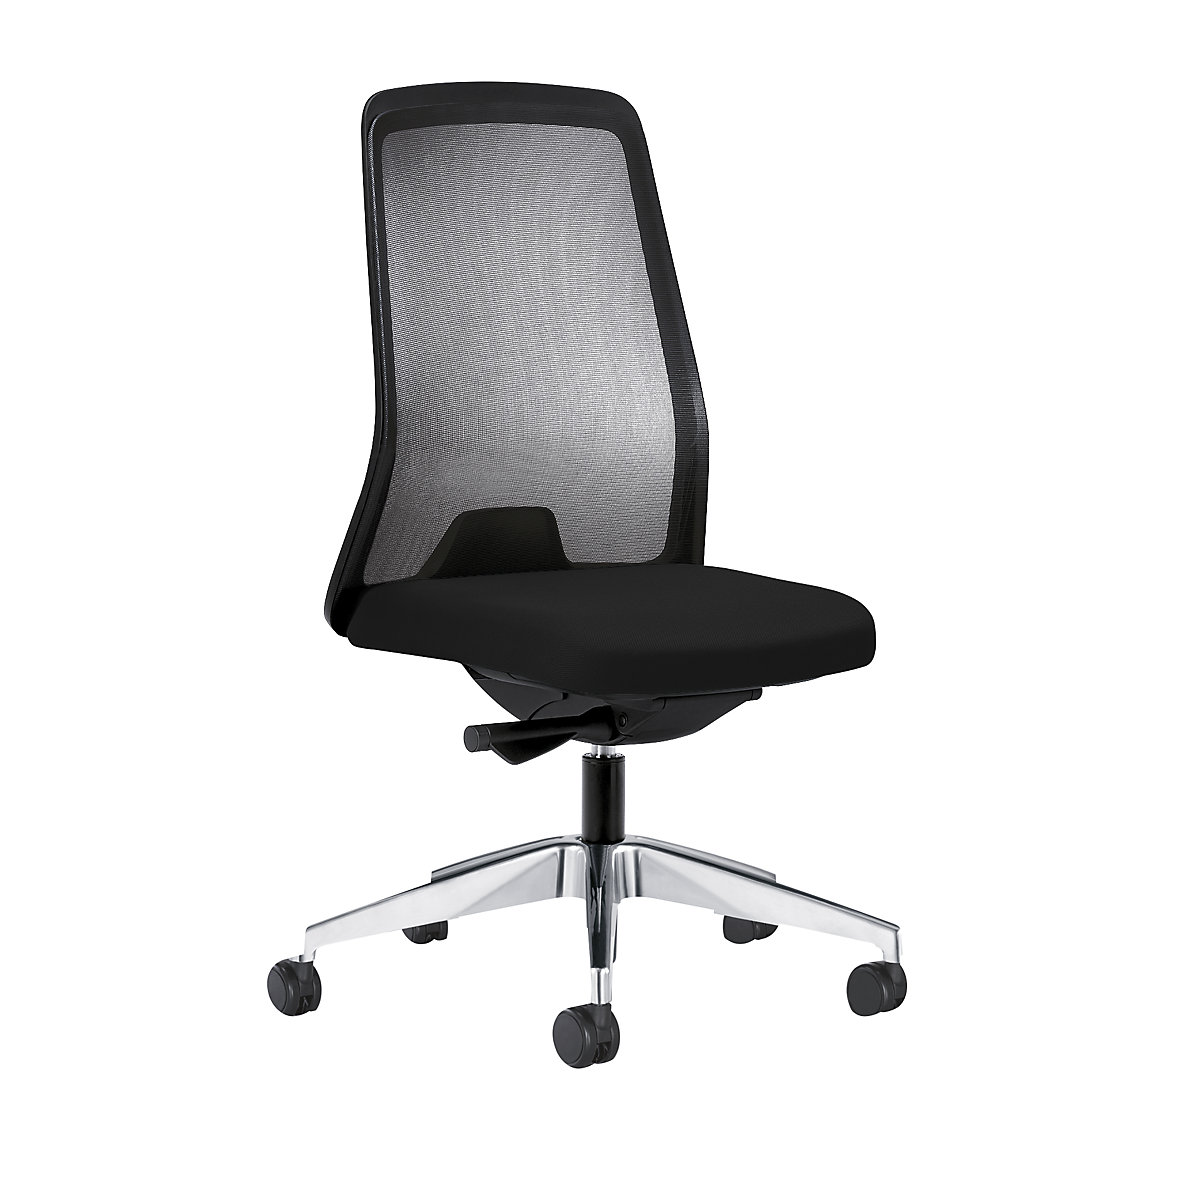 Udobna okretna stolica EVERY, mrežasti naslon za leđa u crnoj boji - interstuhl